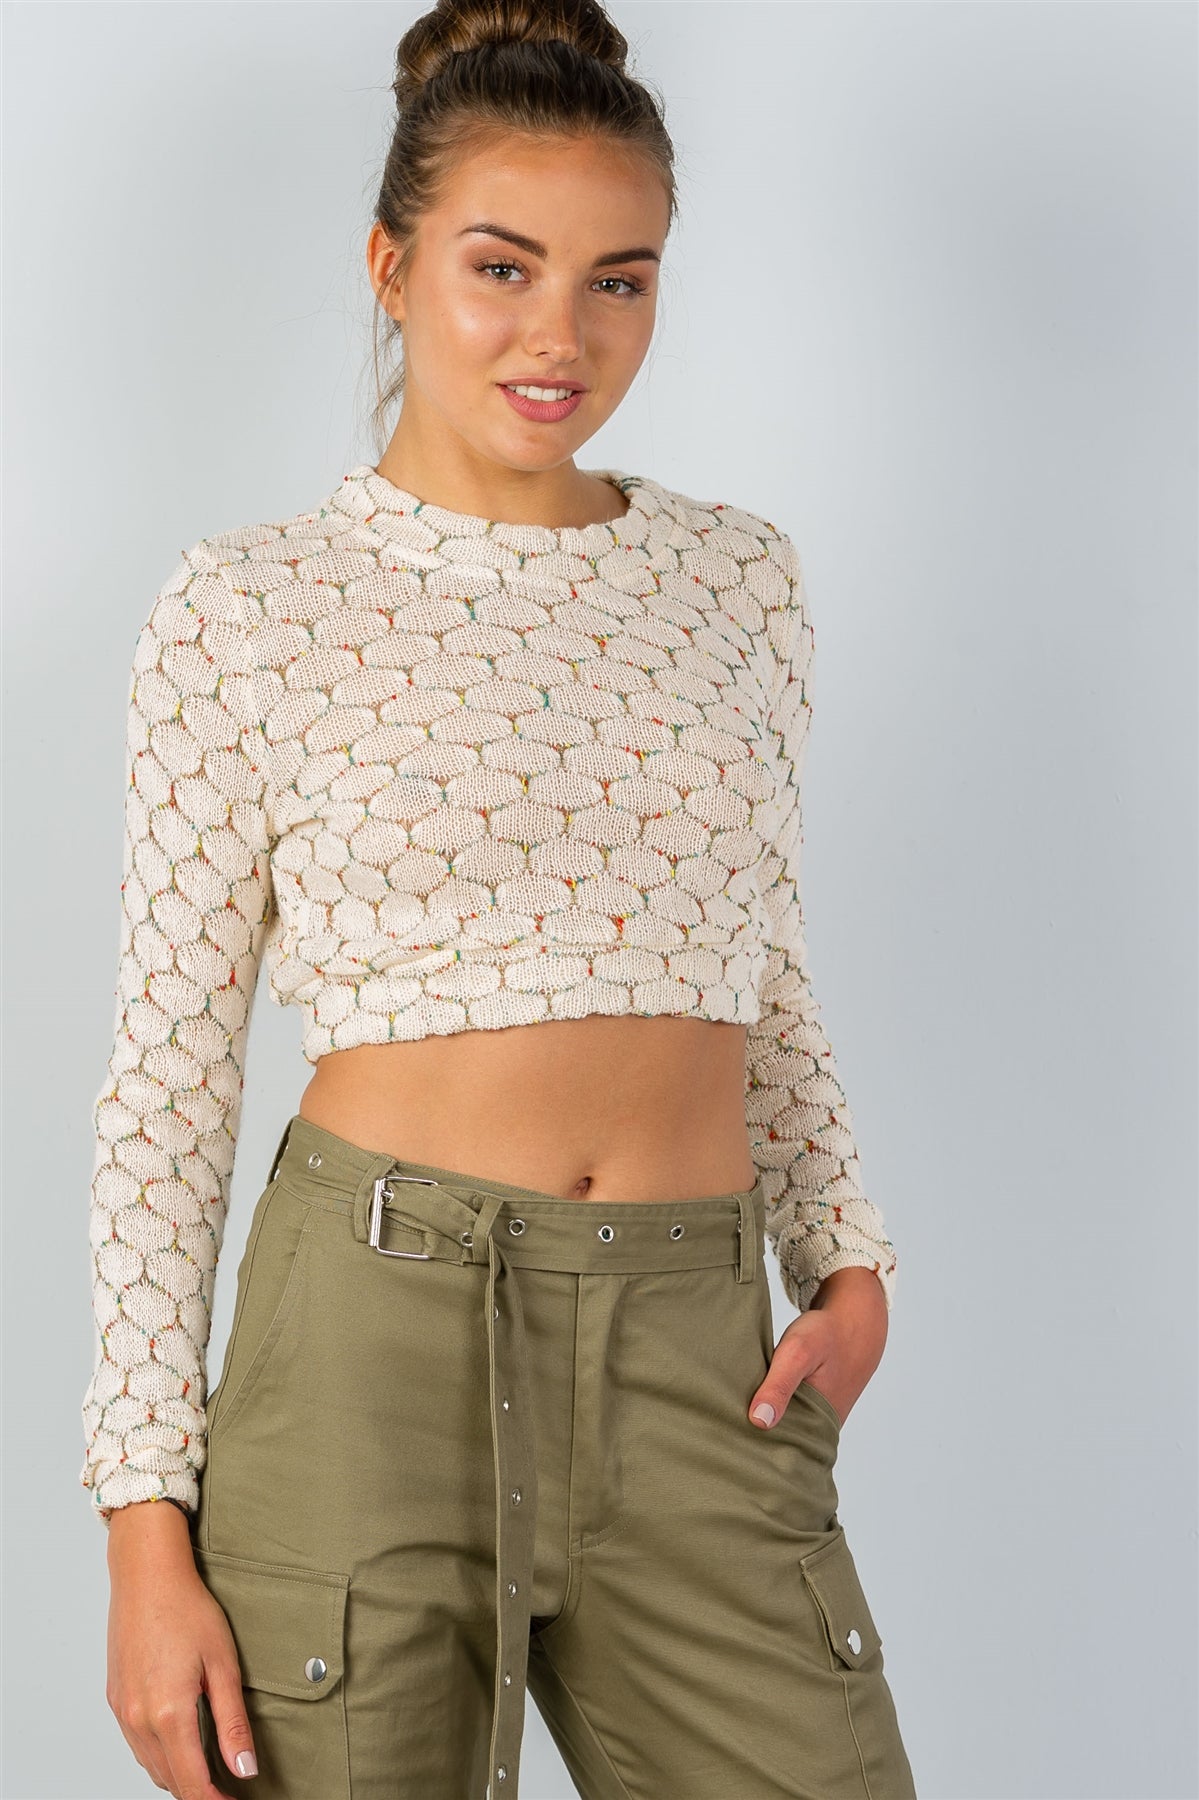 Ladies fashion round neckline hexagon print crop pullover